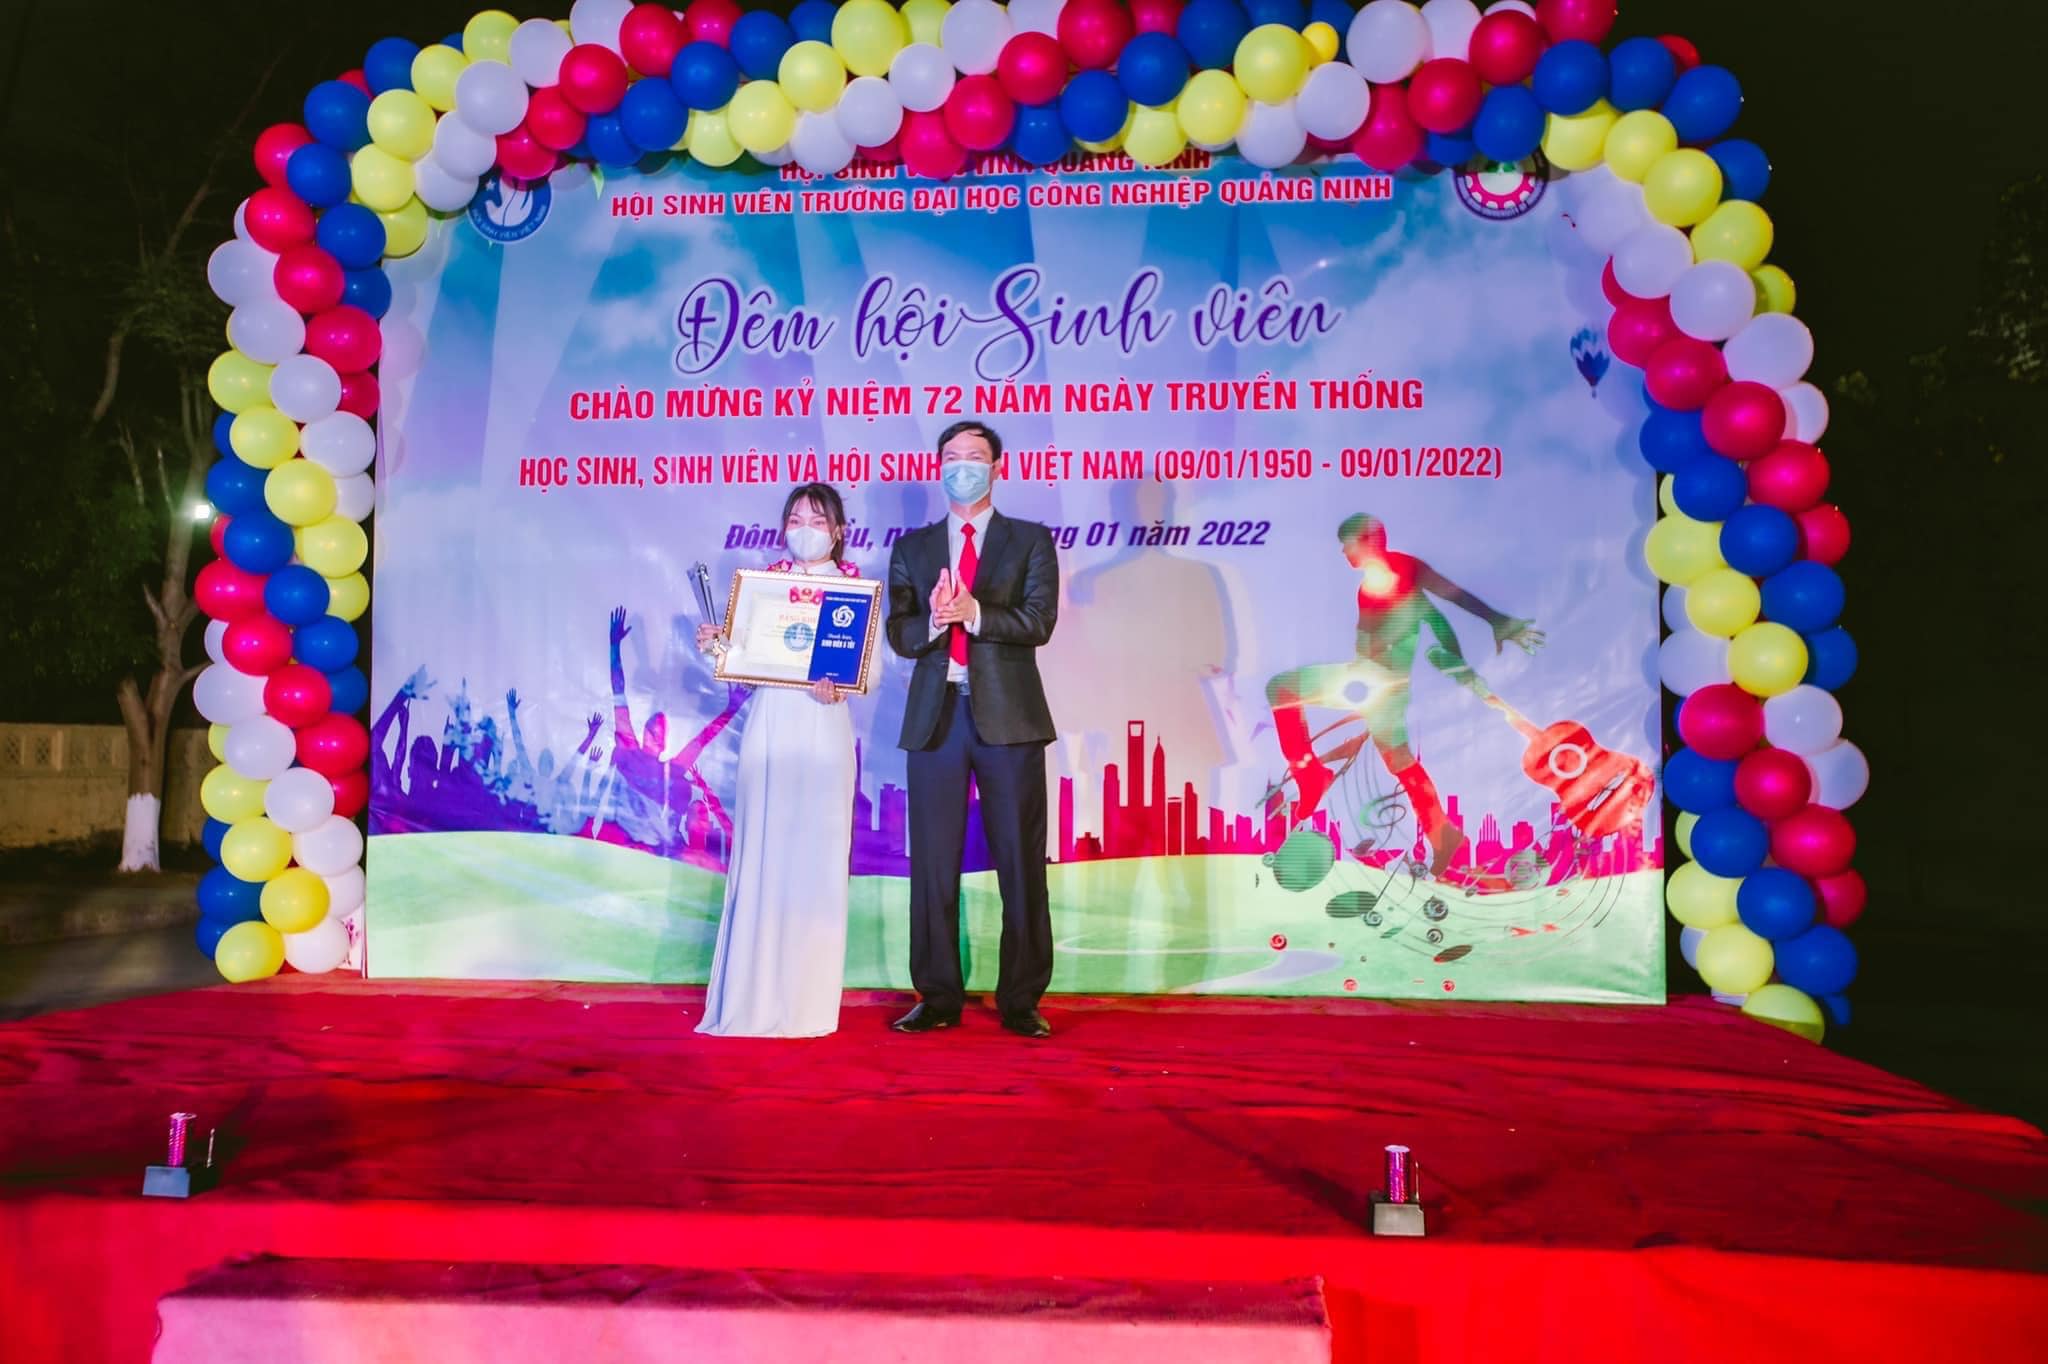 Nguyễn Thị Hồng Nhung - sinh viên trường ĐH Công nghiệp Quảng Ninh  đạt danh hiệu “Sinh viên 5 tốt” cấp Trung ương năm 2021